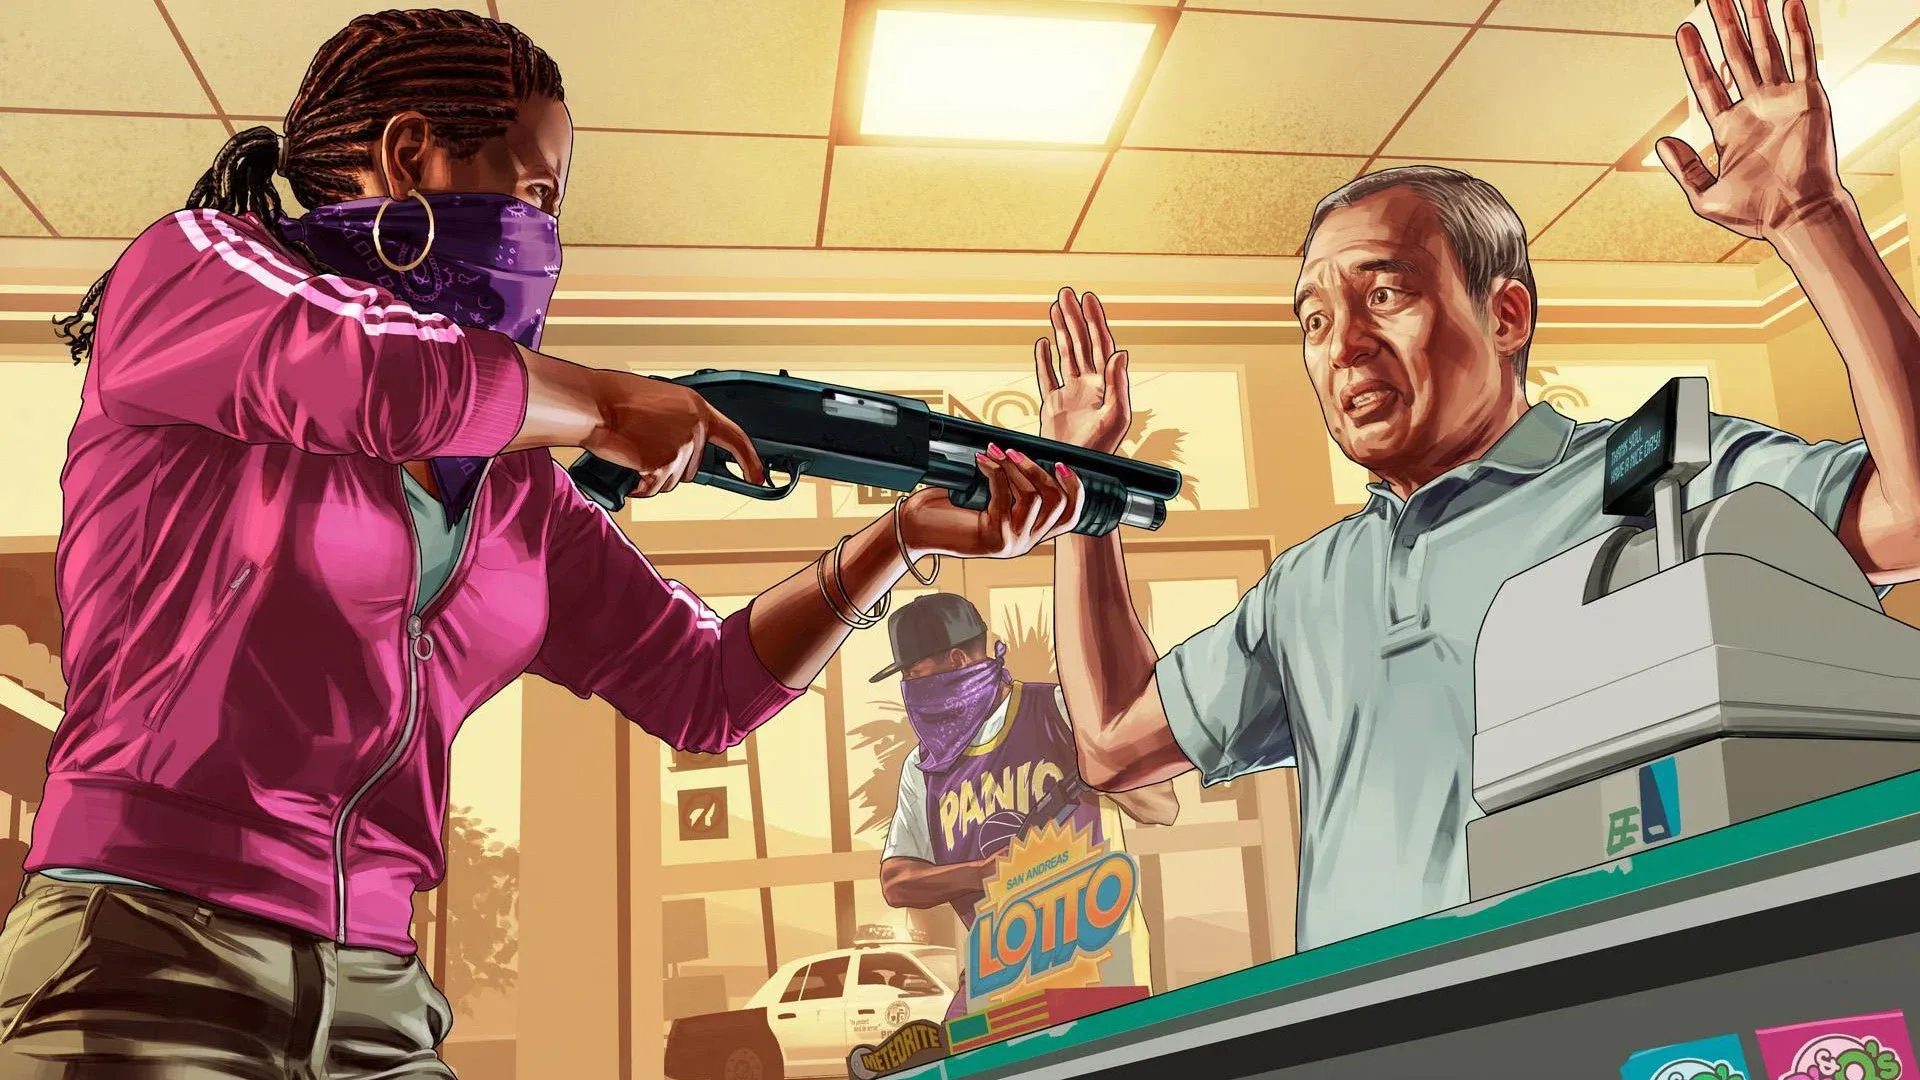 GTA 6: Rockstar prestes a anunciar o jogo mais esperado da década -  TechShake